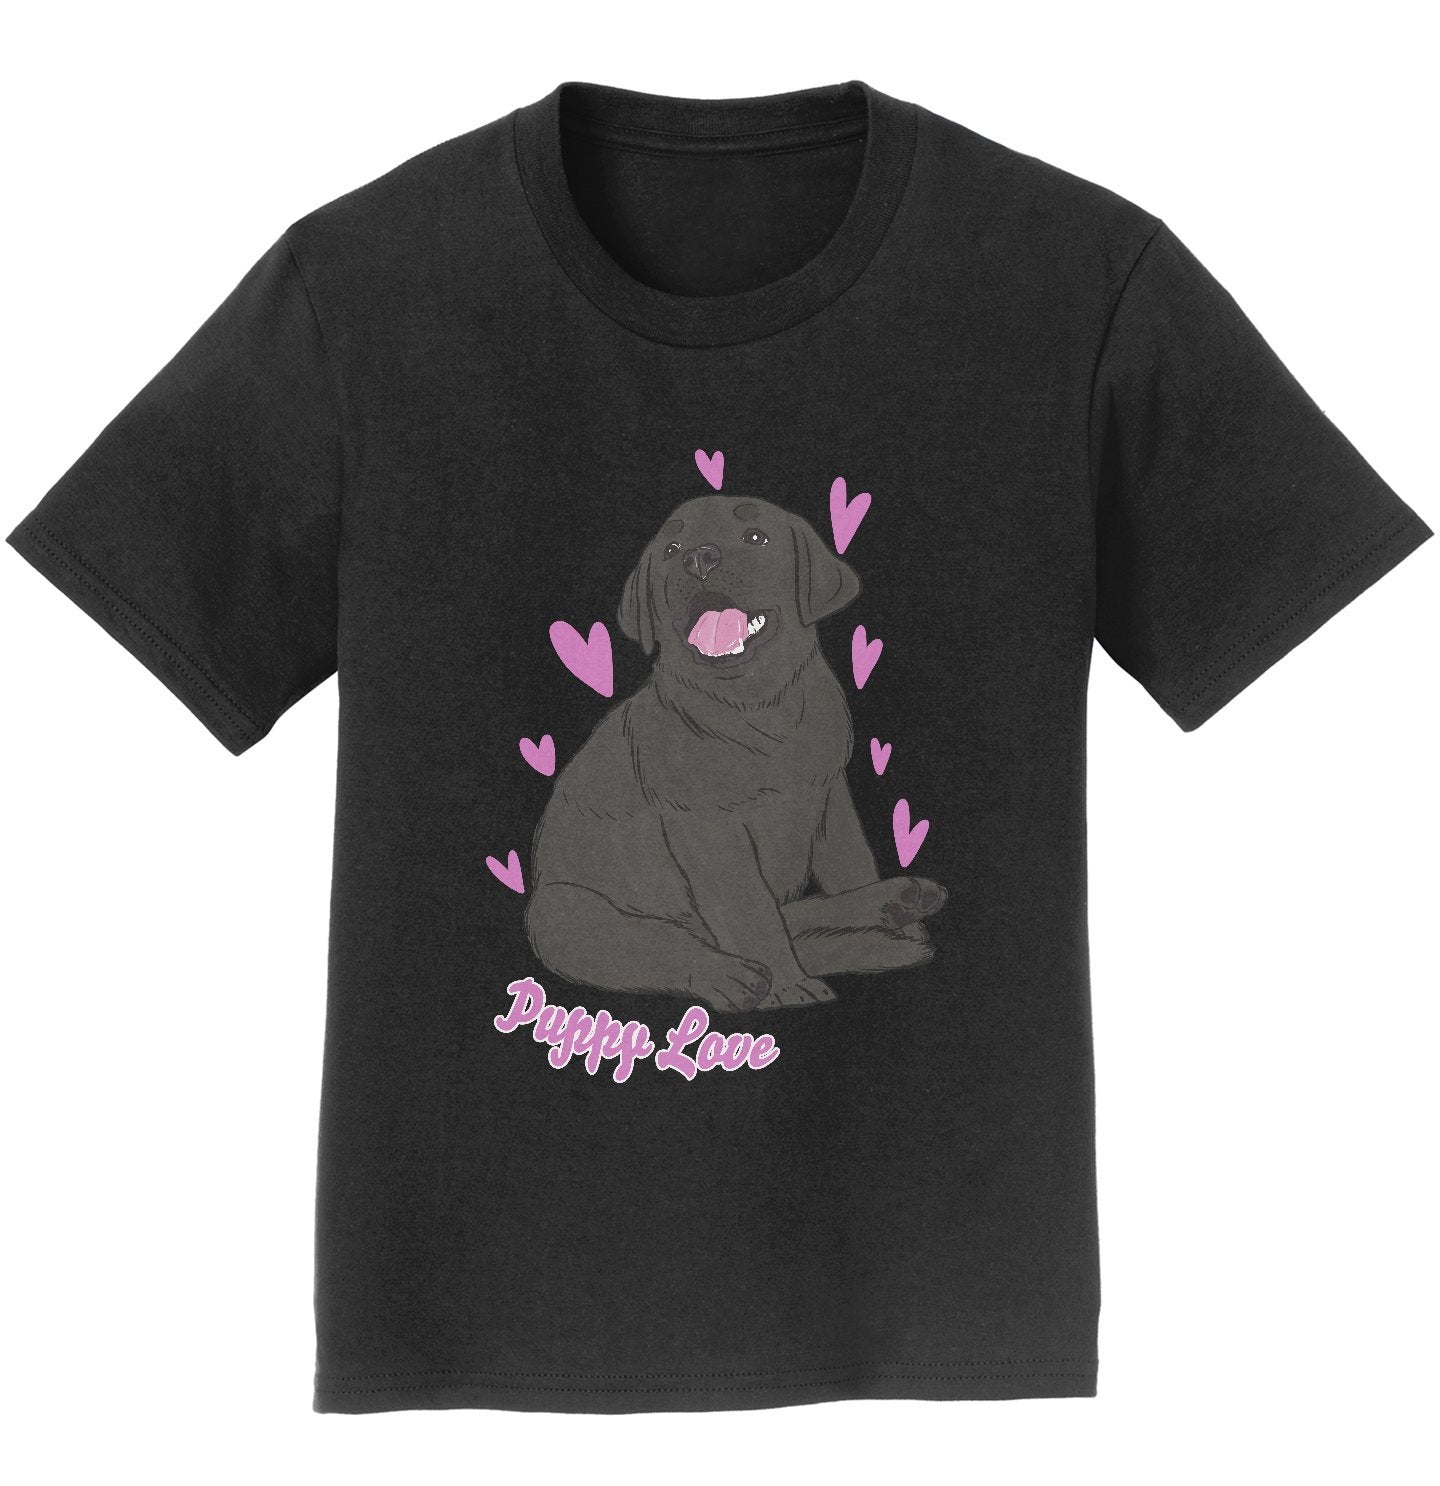 Black Labrador Puppy Love - Kids' Unisex T-Shirt